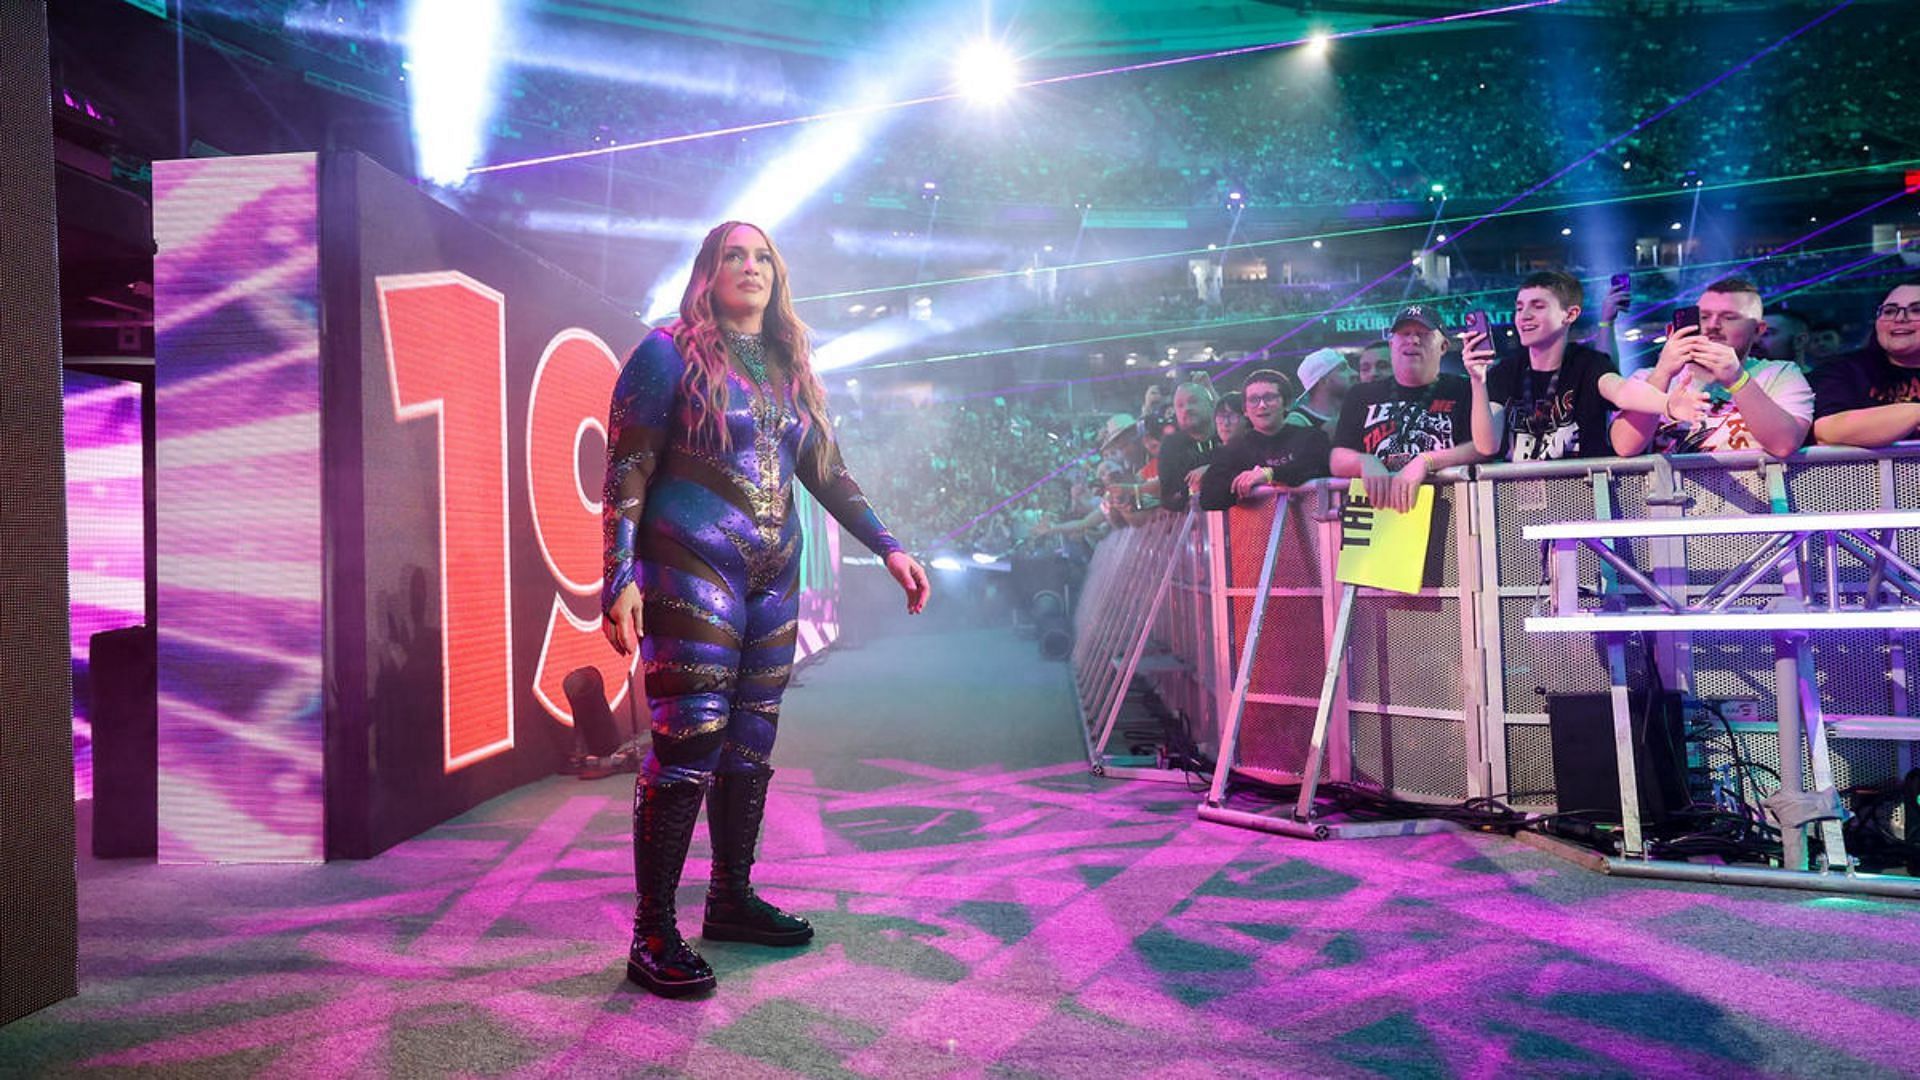 Nia Jax was eliminated by Jade Cargill this year at Royal Rumble